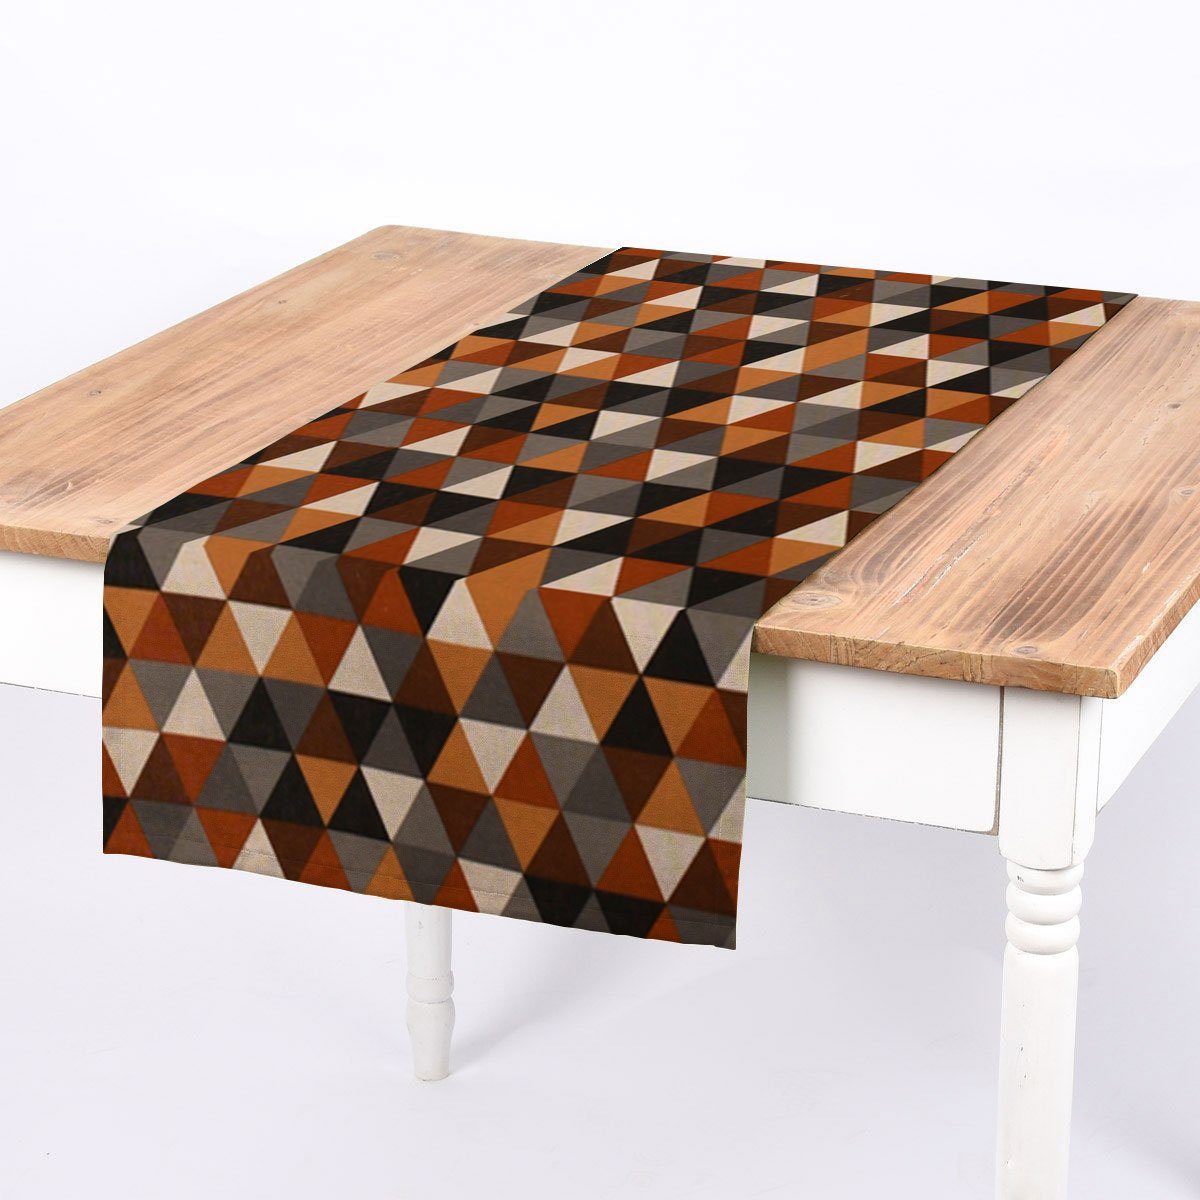 SCHÖNER LEBEN. Tischläufer SCHÖNER LEBEN. Tischläufer Leinenlook Geometric Tile Dreiecke braun, handmade | Tischläufer